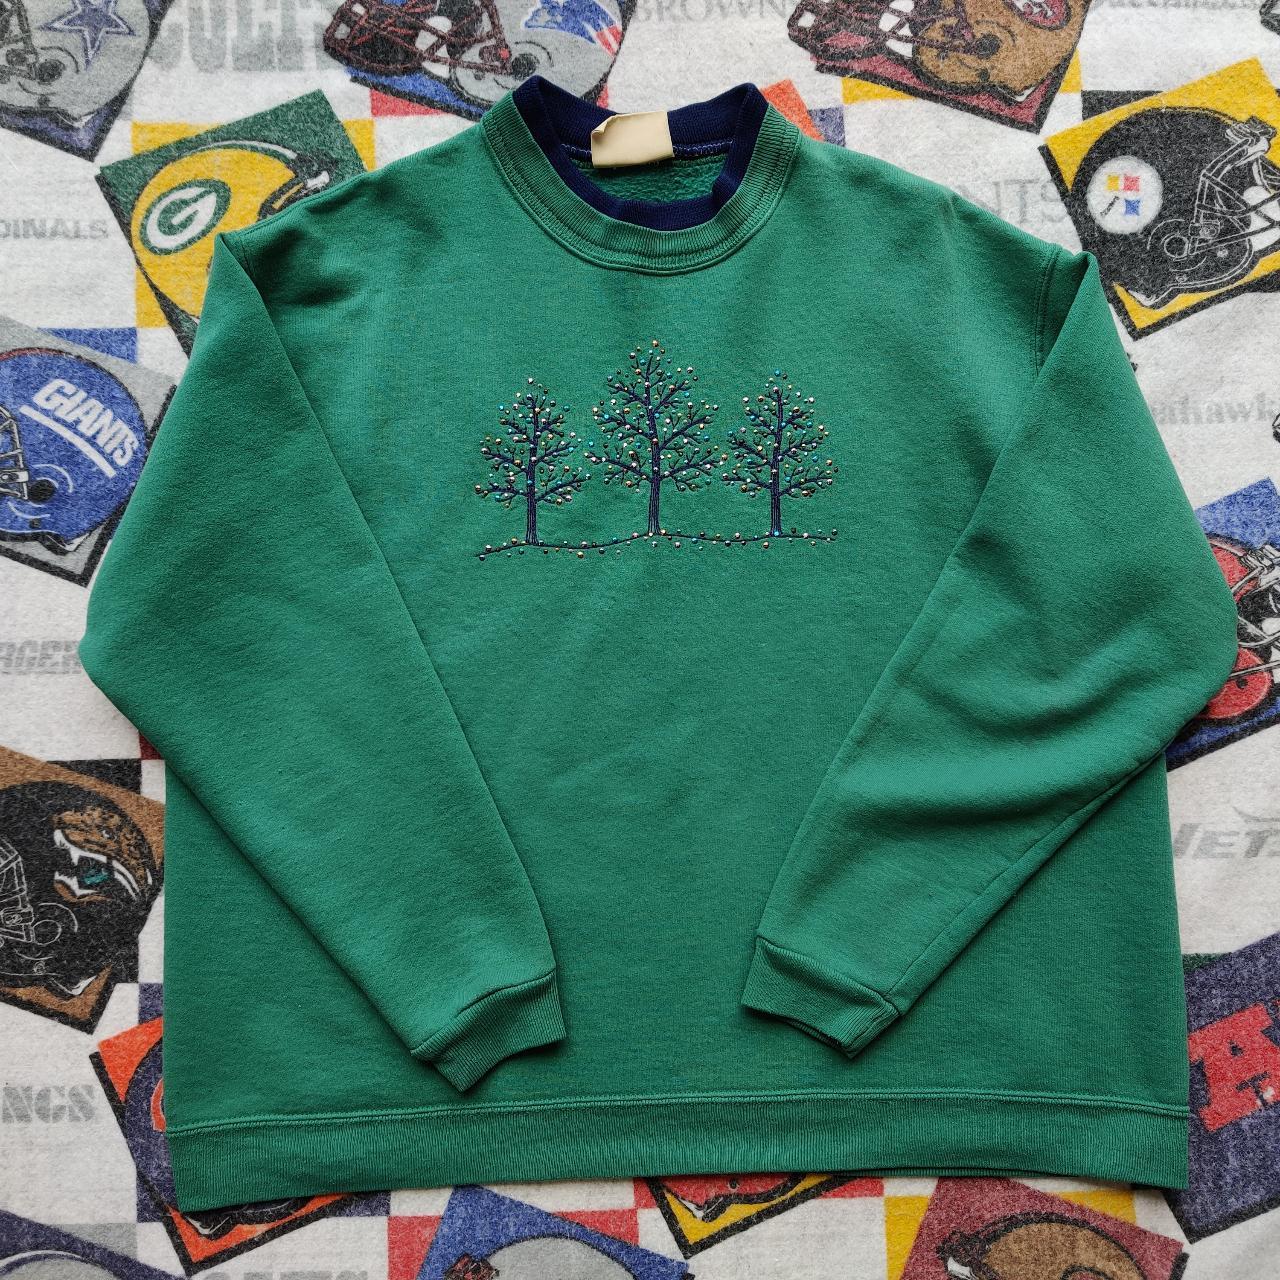 Product Image 1 - Vintage Embroidered Rhinestone Grandma Sweatshirt
used